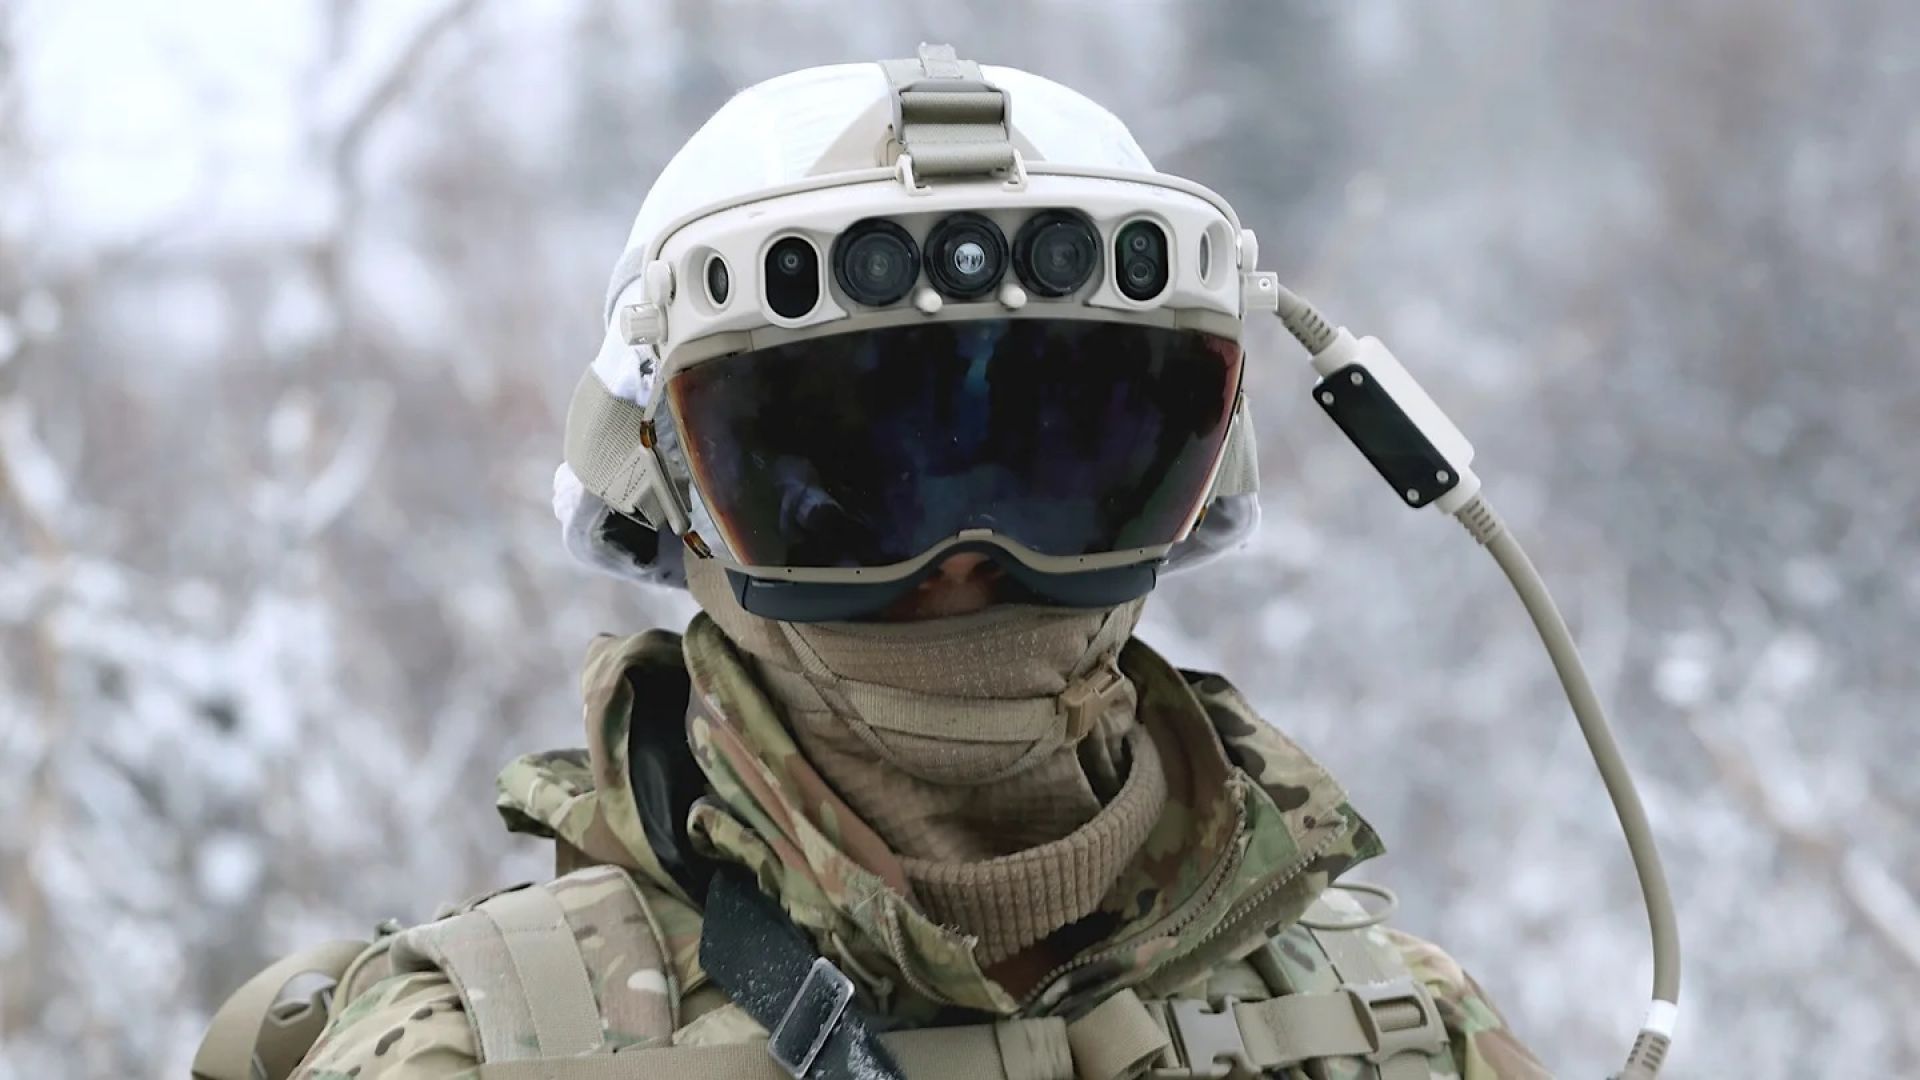 Пентагонът спря проект за шлем с добавена реалност